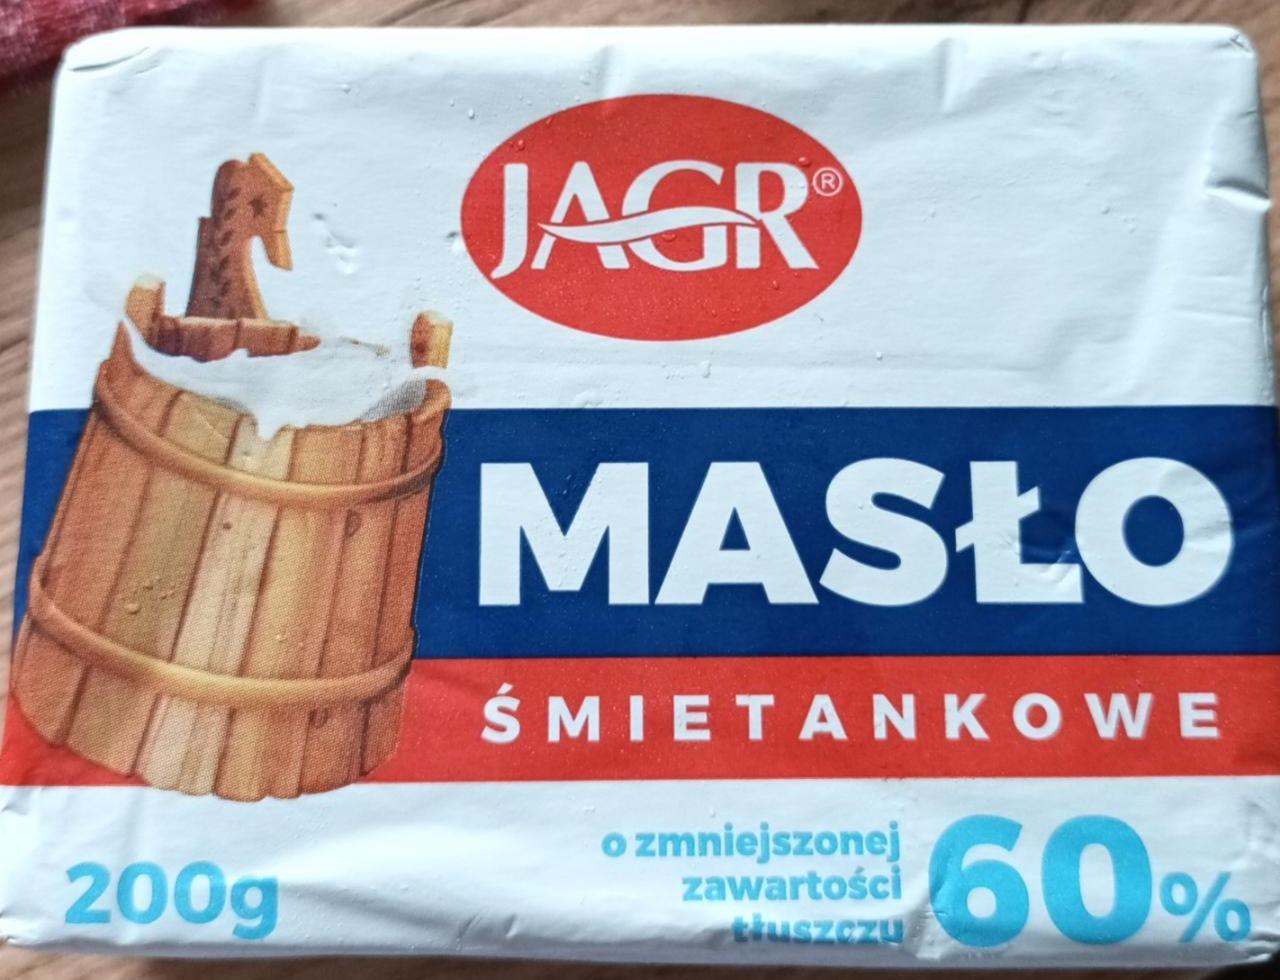 Fotografie - Masło śmietankowe 60% Jagr